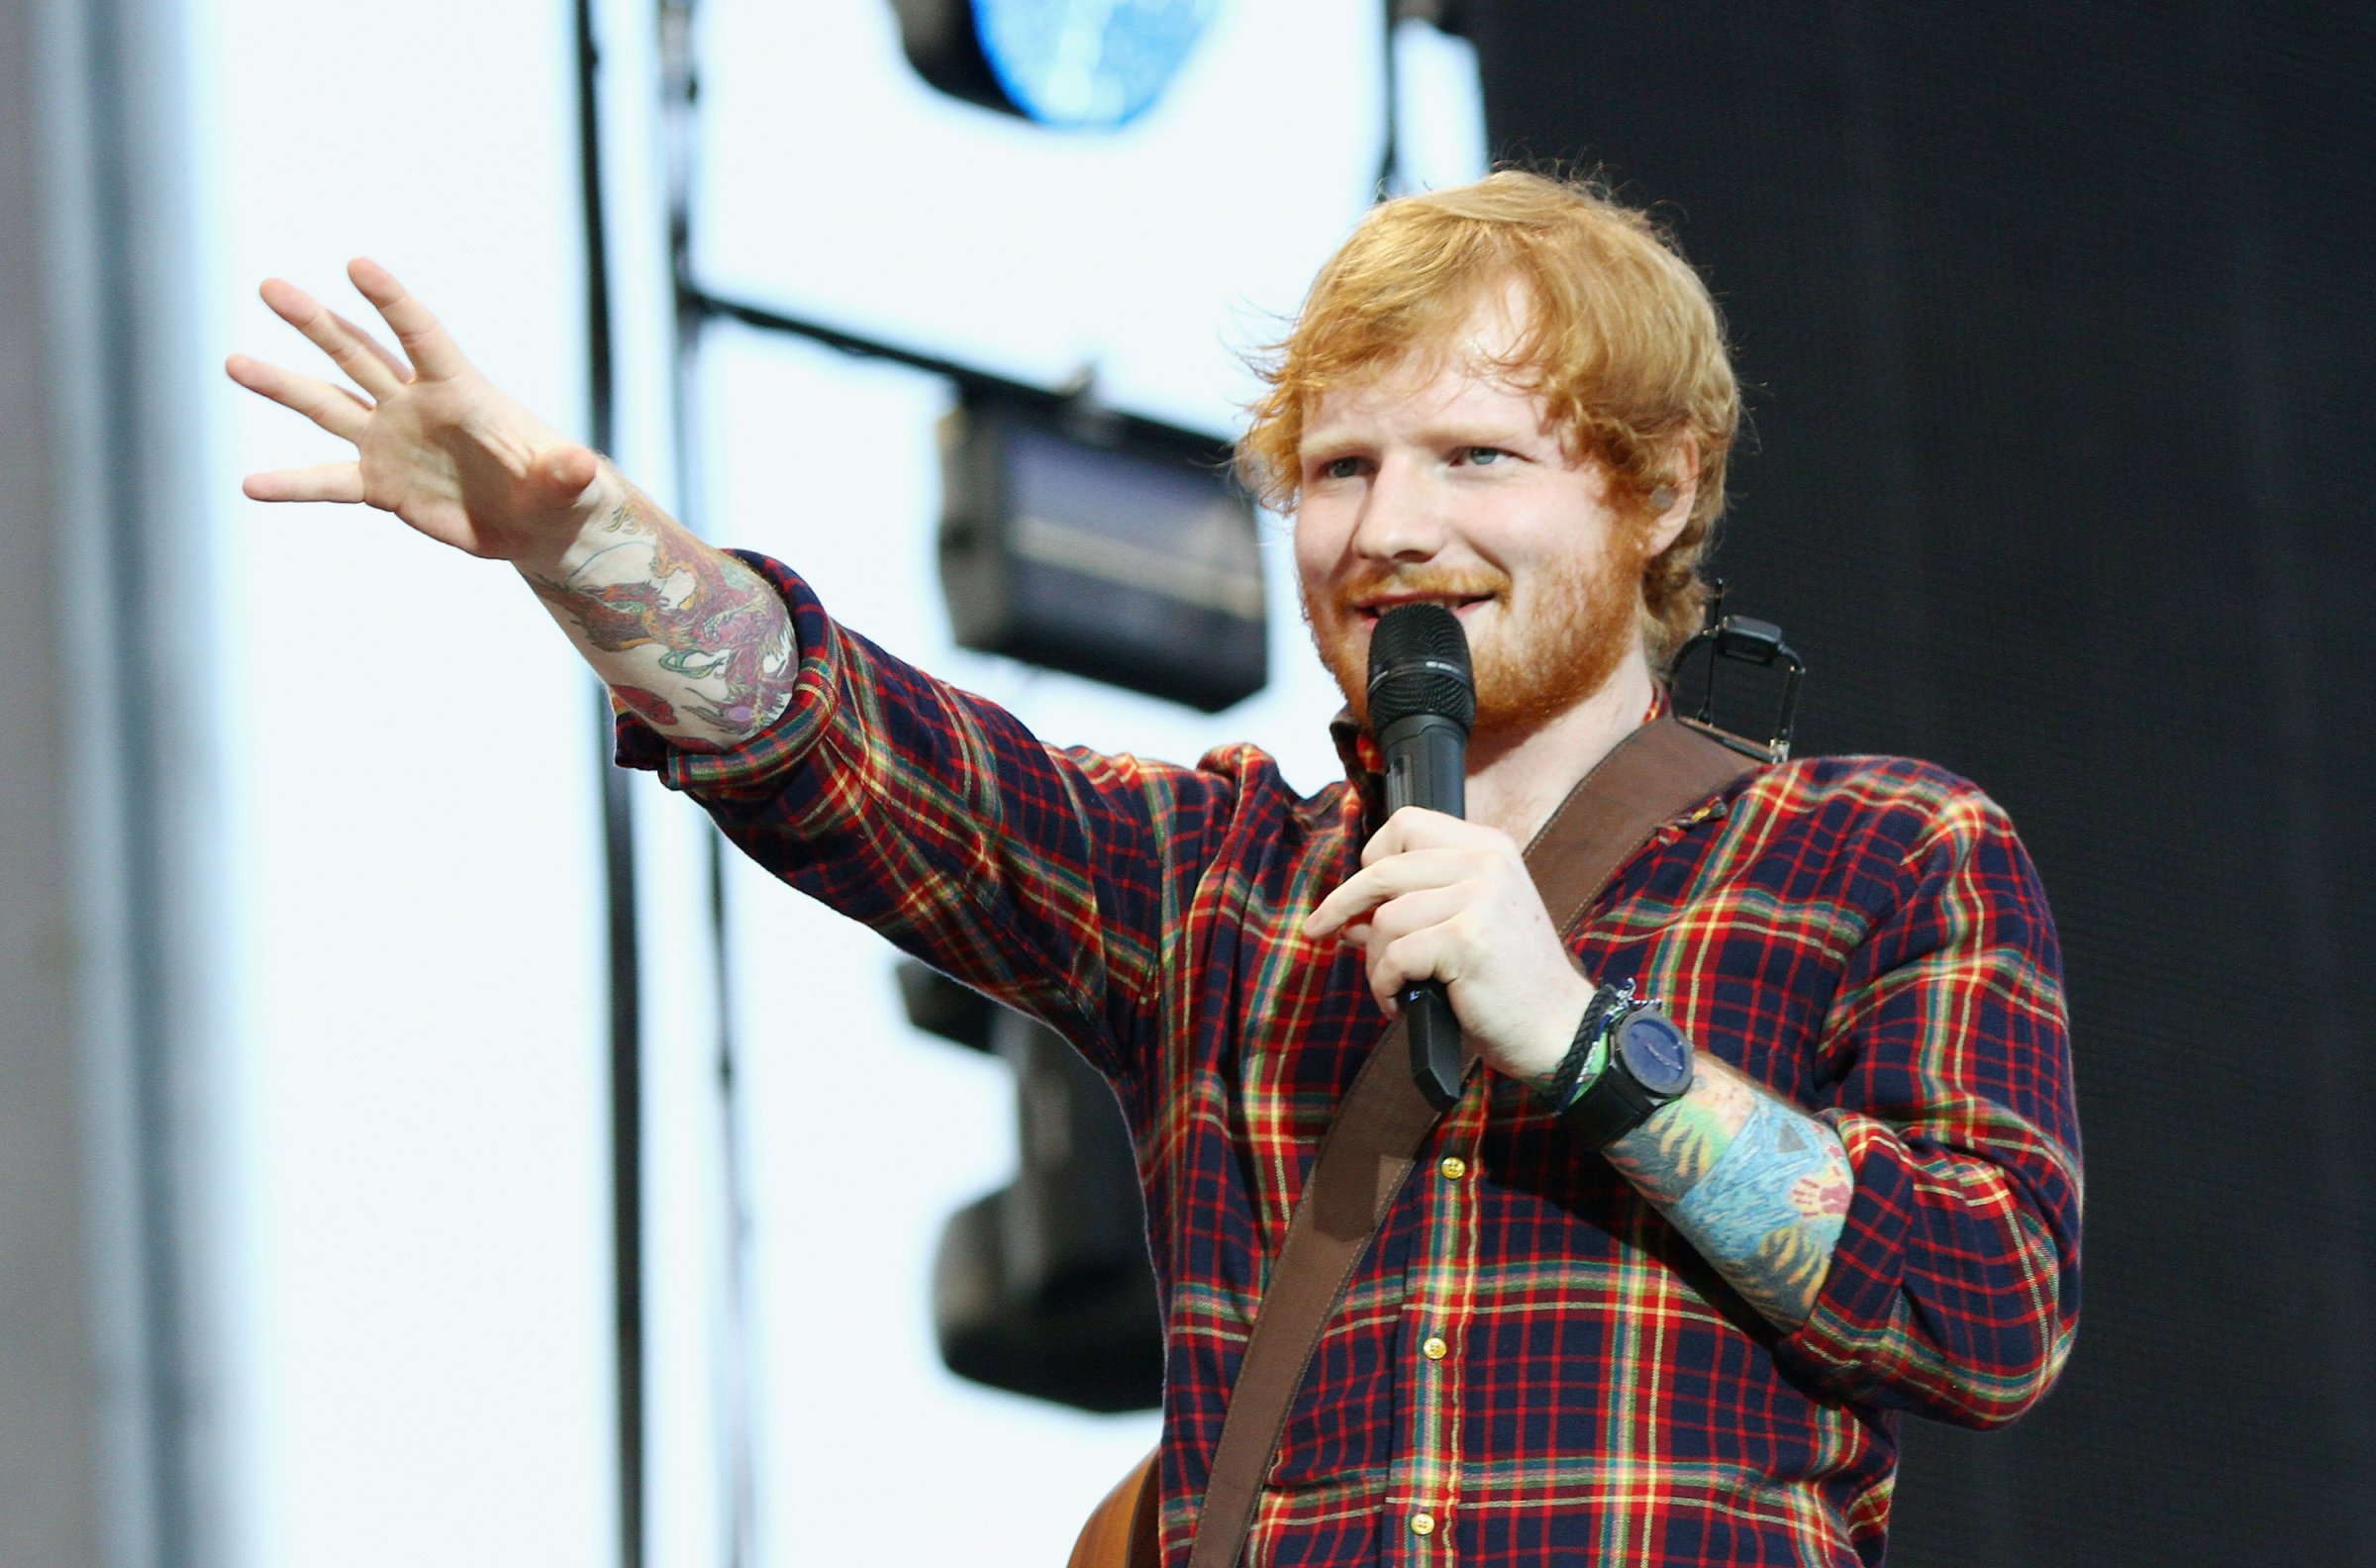 Ed Sheeran Performs At Croke Park In Dublin